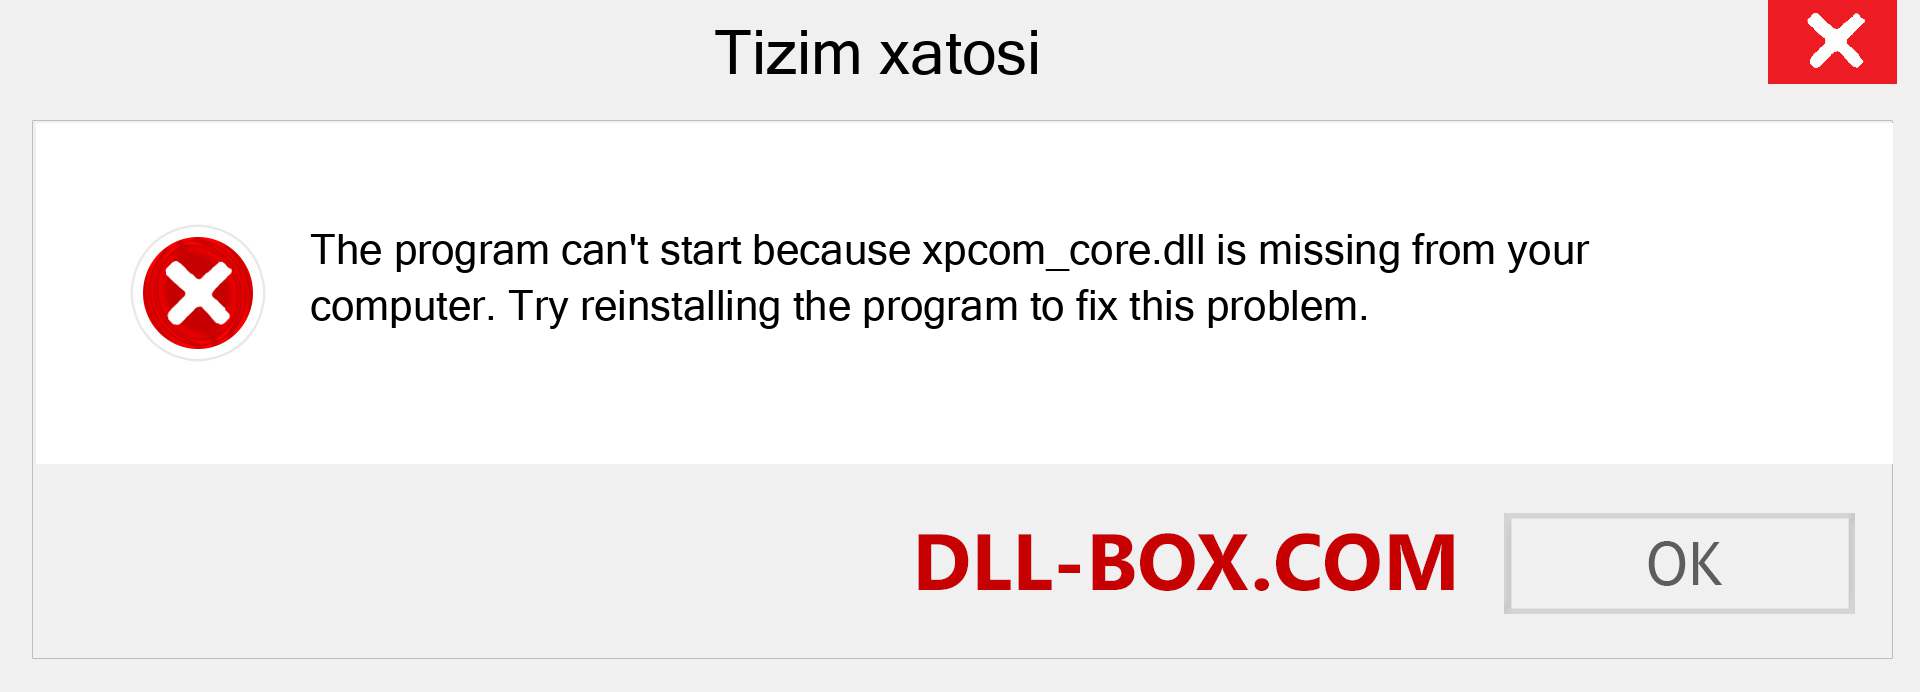 xpcom_core.dll fayli yo'qolganmi?. Windows 7, 8, 10 uchun yuklab olish - Windowsda xpcom_core dll etishmayotgan xatoni tuzating, rasmlar, rasmlar